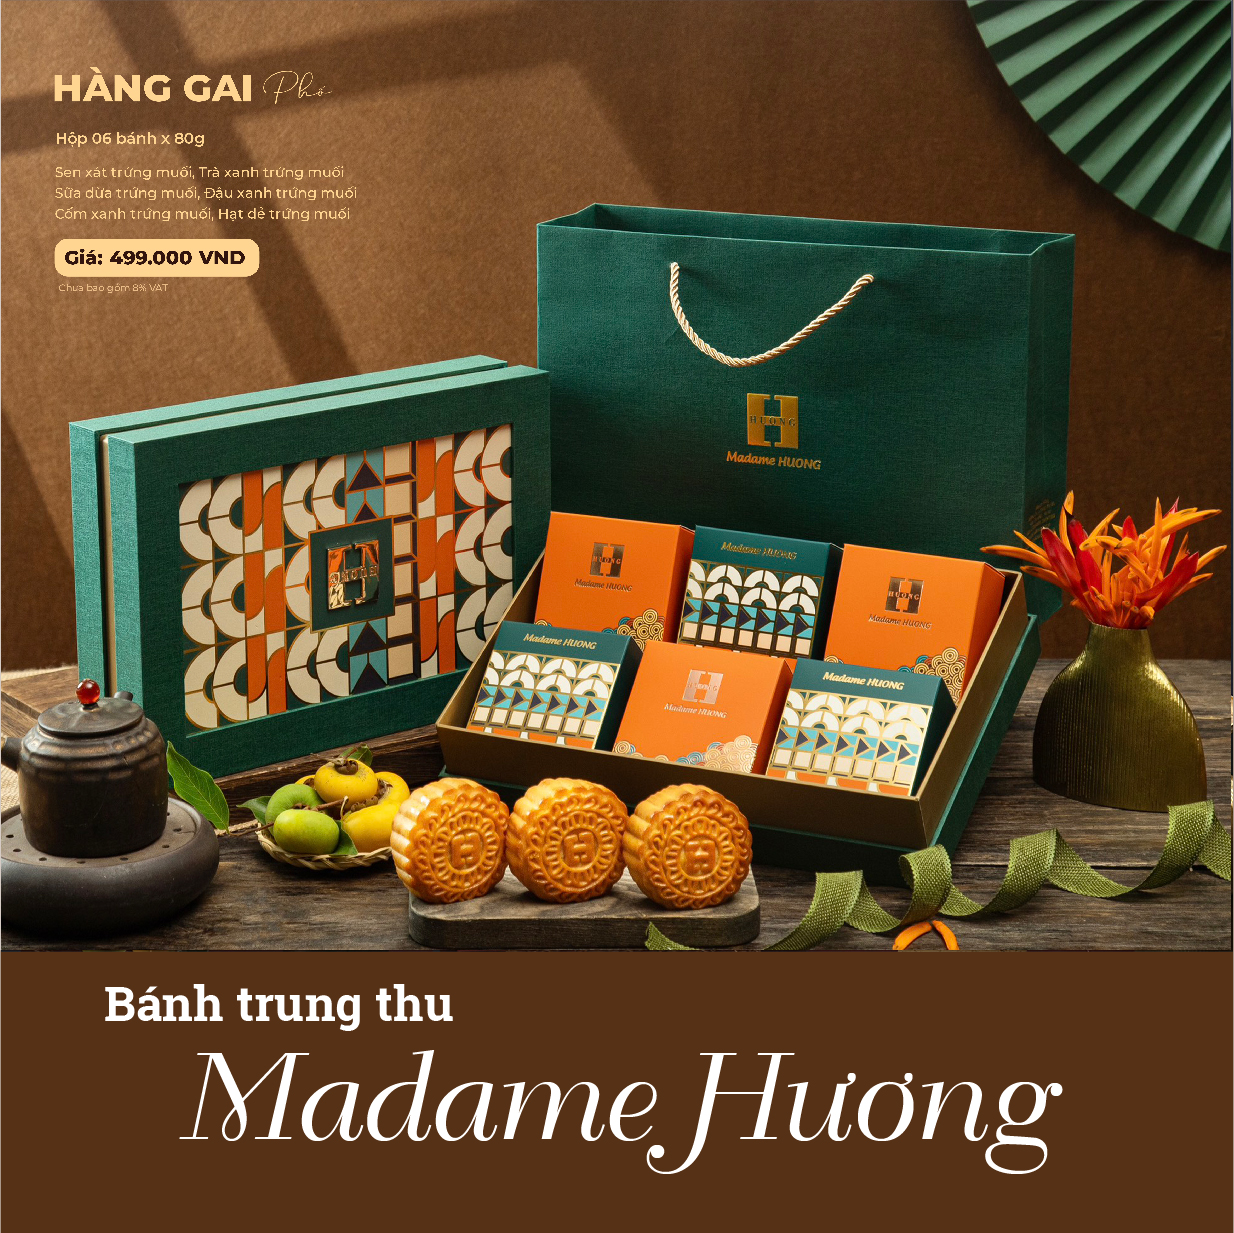 Điểm bán bánh trung thu Madame Hương uy tín tại Hà Nội: Nơi trải nghiệm ẩm thực độc đáo